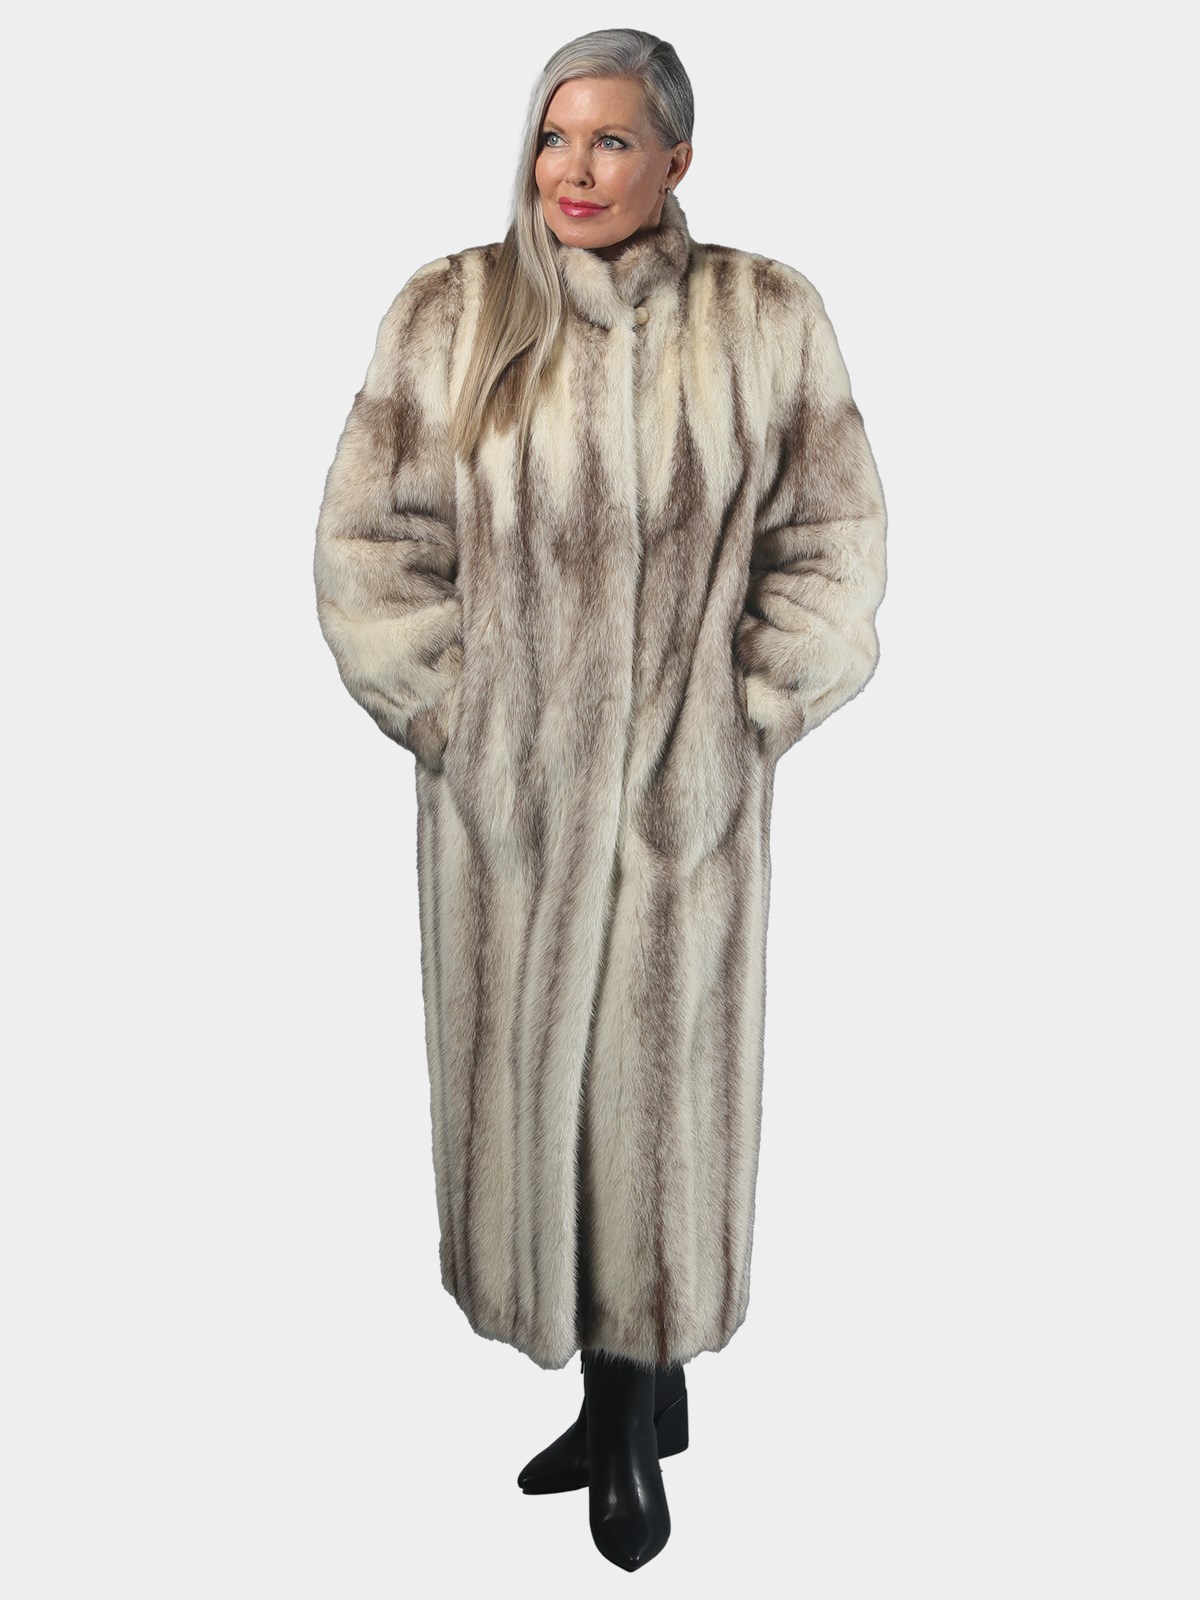 Women's Fur Coats and Mink Coats